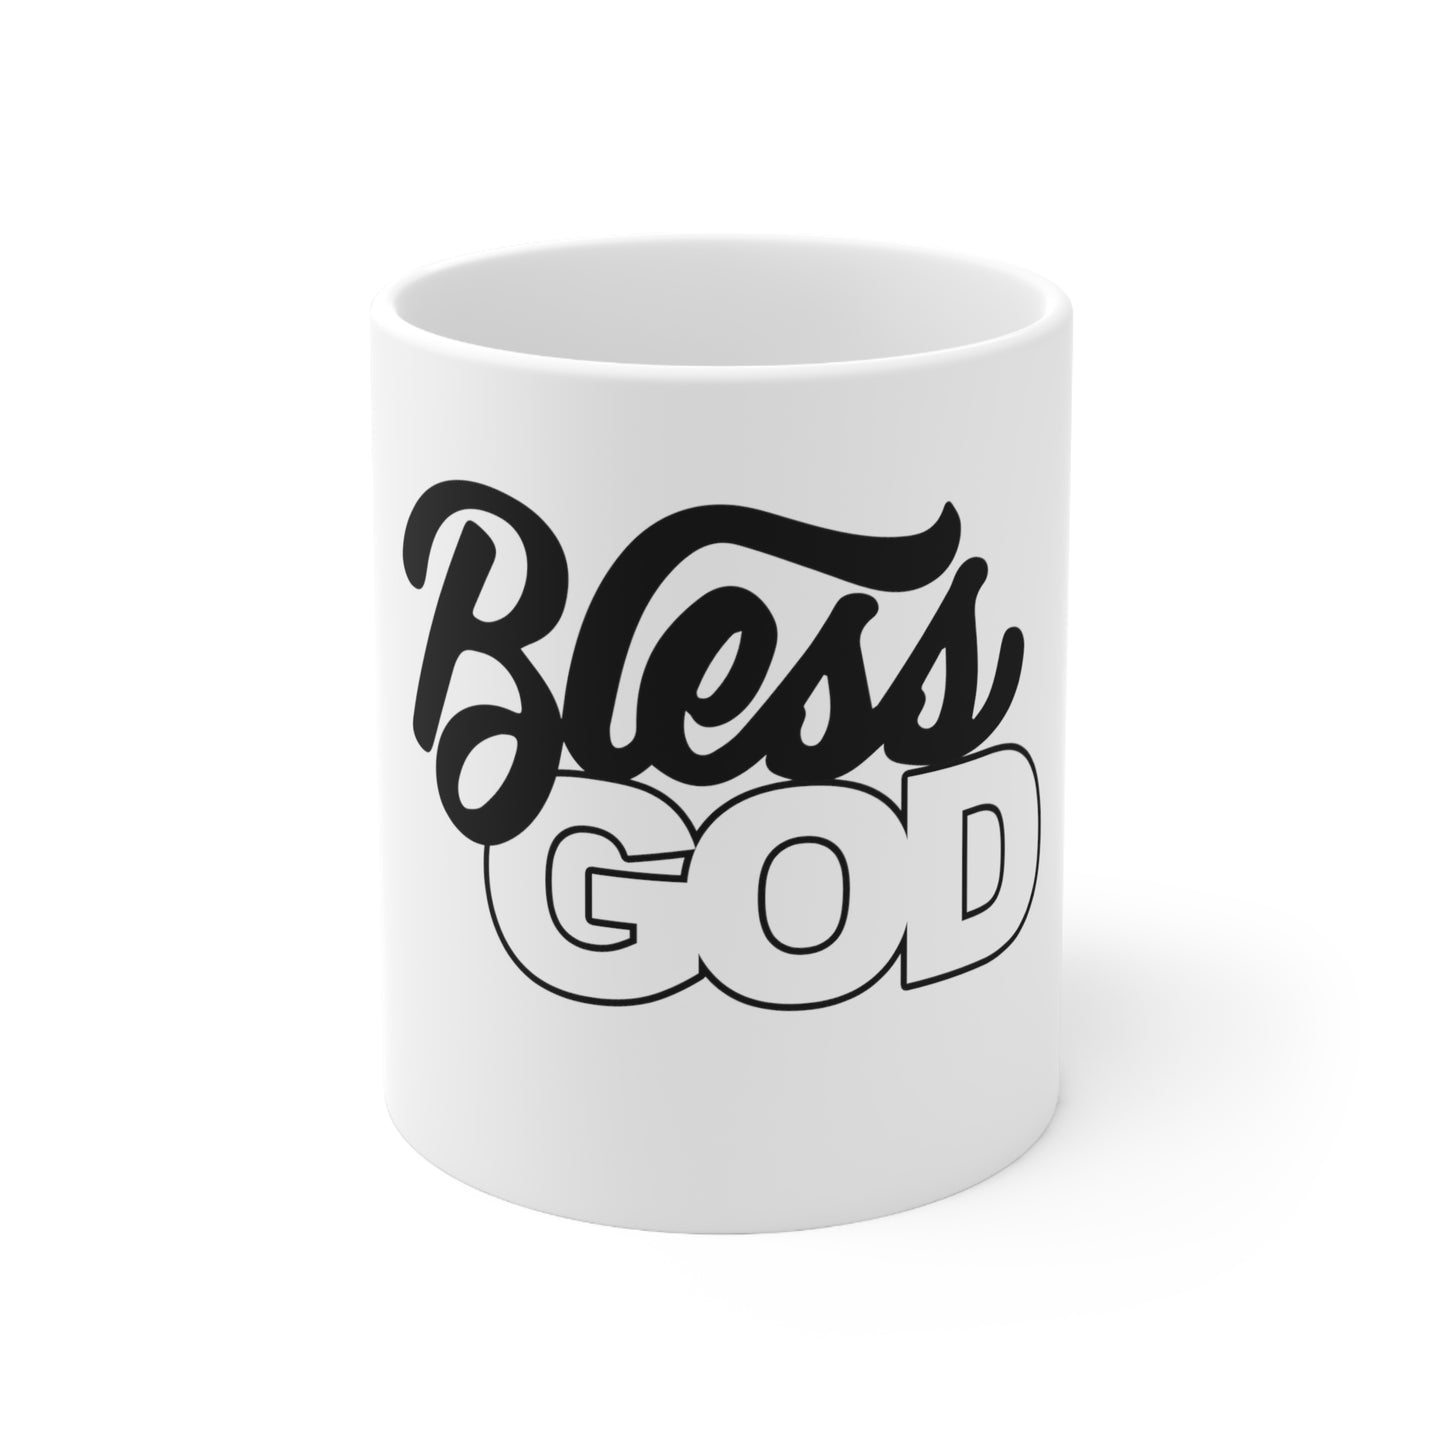 Bless God Ceramic Mug 11oz